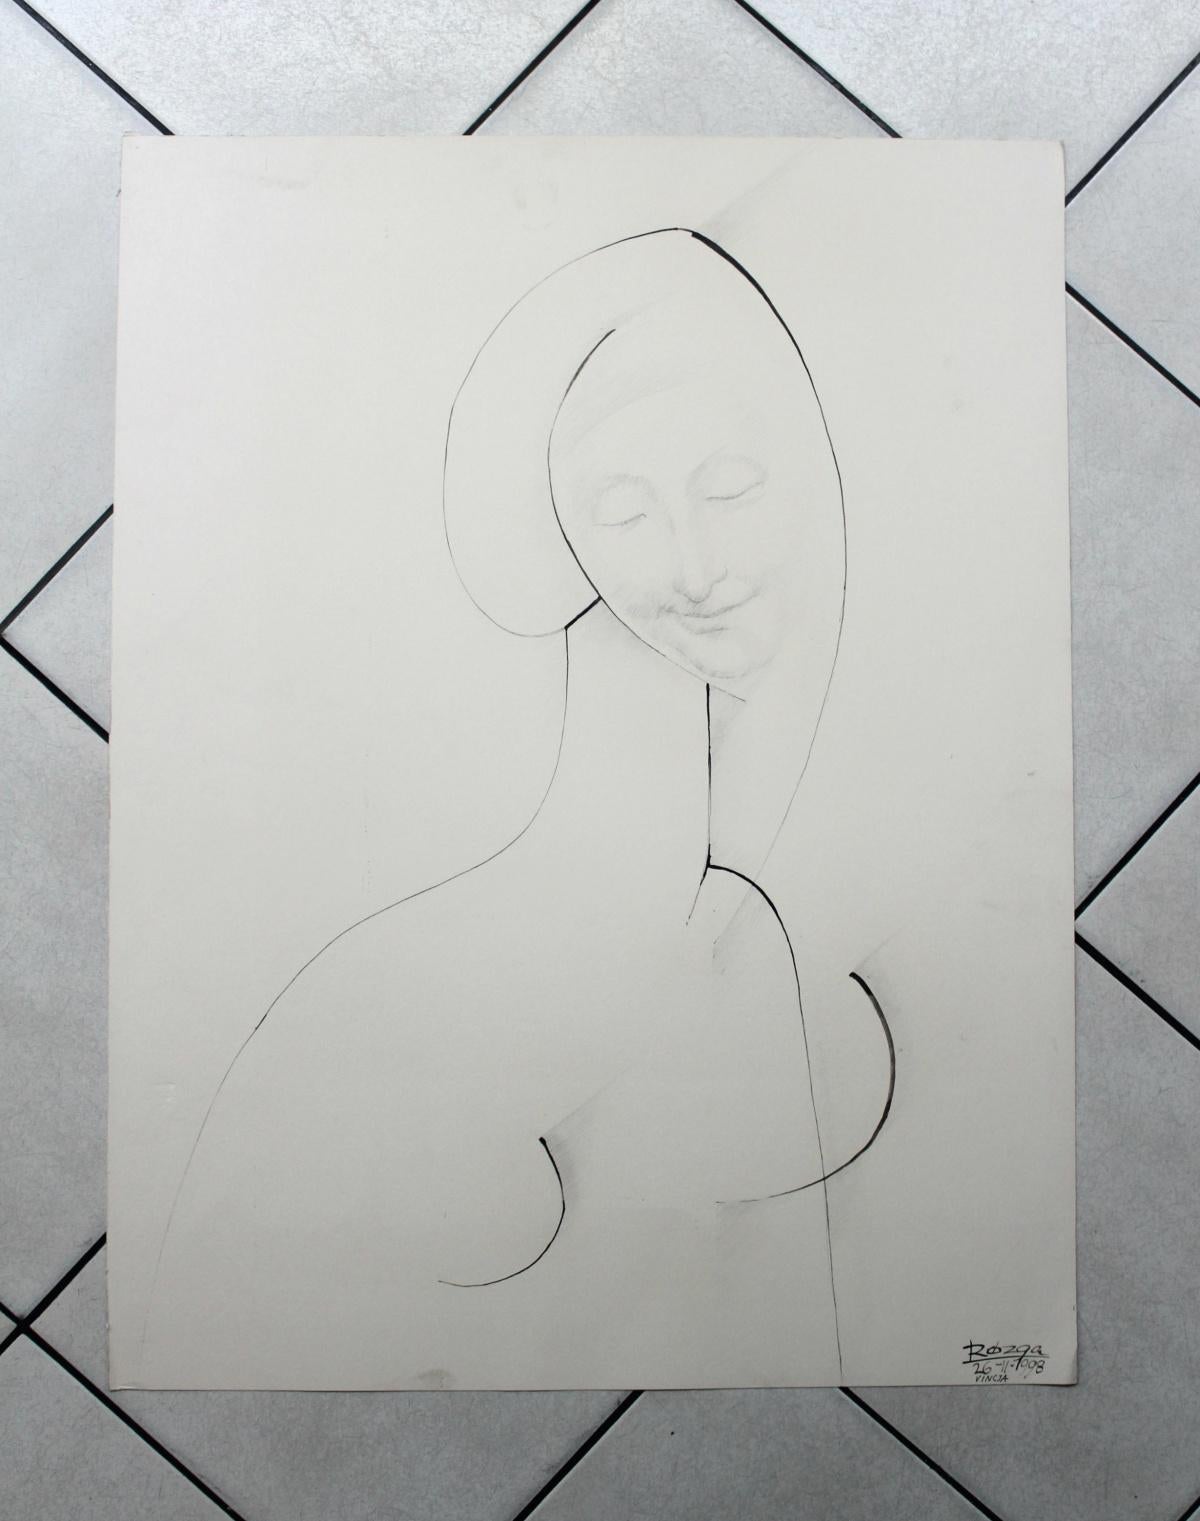 Vinicja -  dessin figuratif, portrait surréaliste, noir et blanc, minimalisme - Noir Portrait par Leszek Rózga